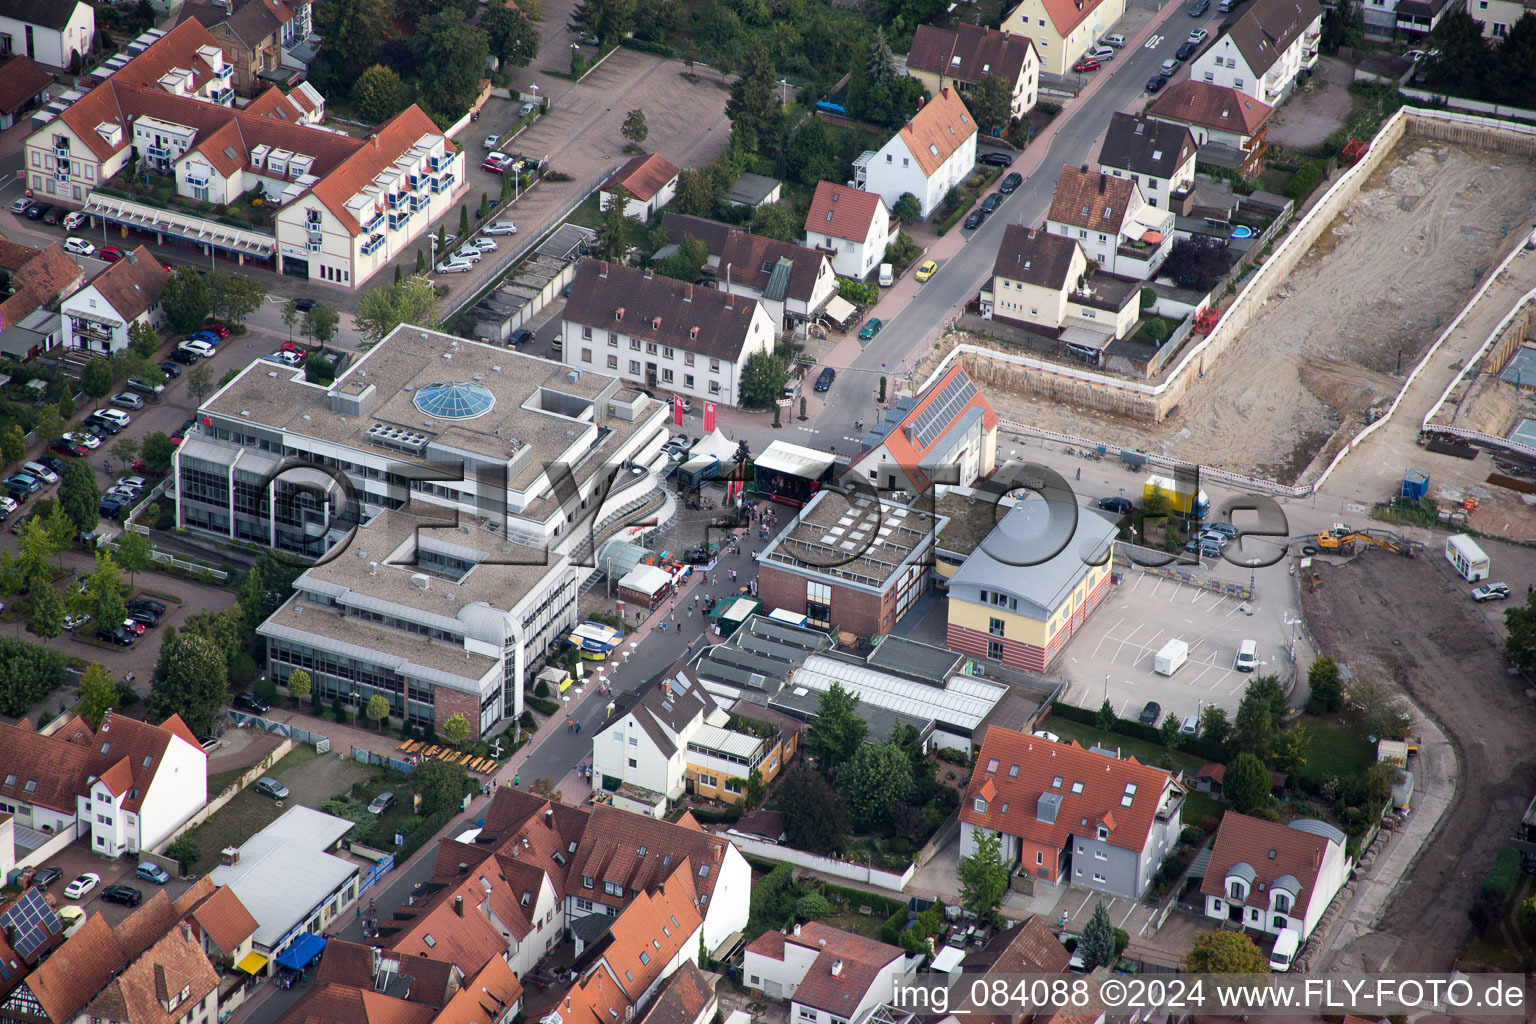 Neubaugebiet "Im Stadtkern" zw. Bismarck- und Gartenstr in Kandel im Bundesland Rheinland-Pfalz, Deutschland von oben